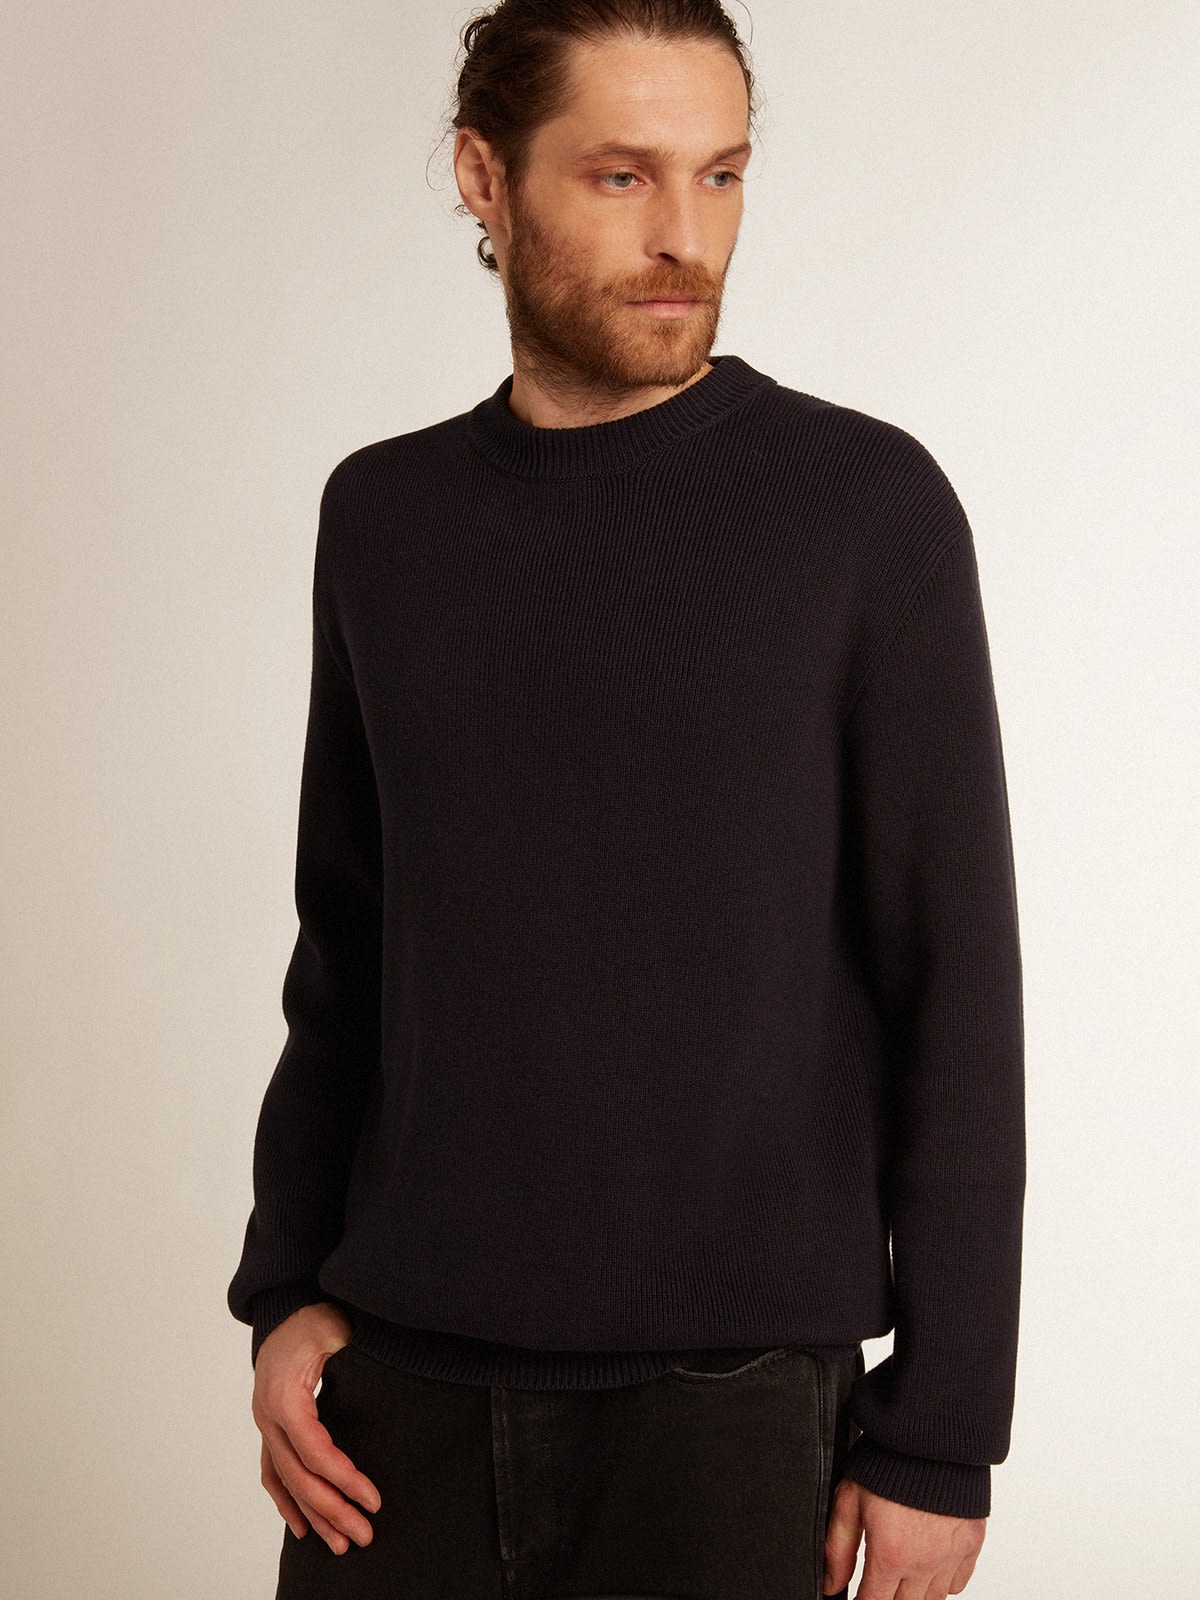 Men's round-neck sweater in dark blue cotton with logo - 2